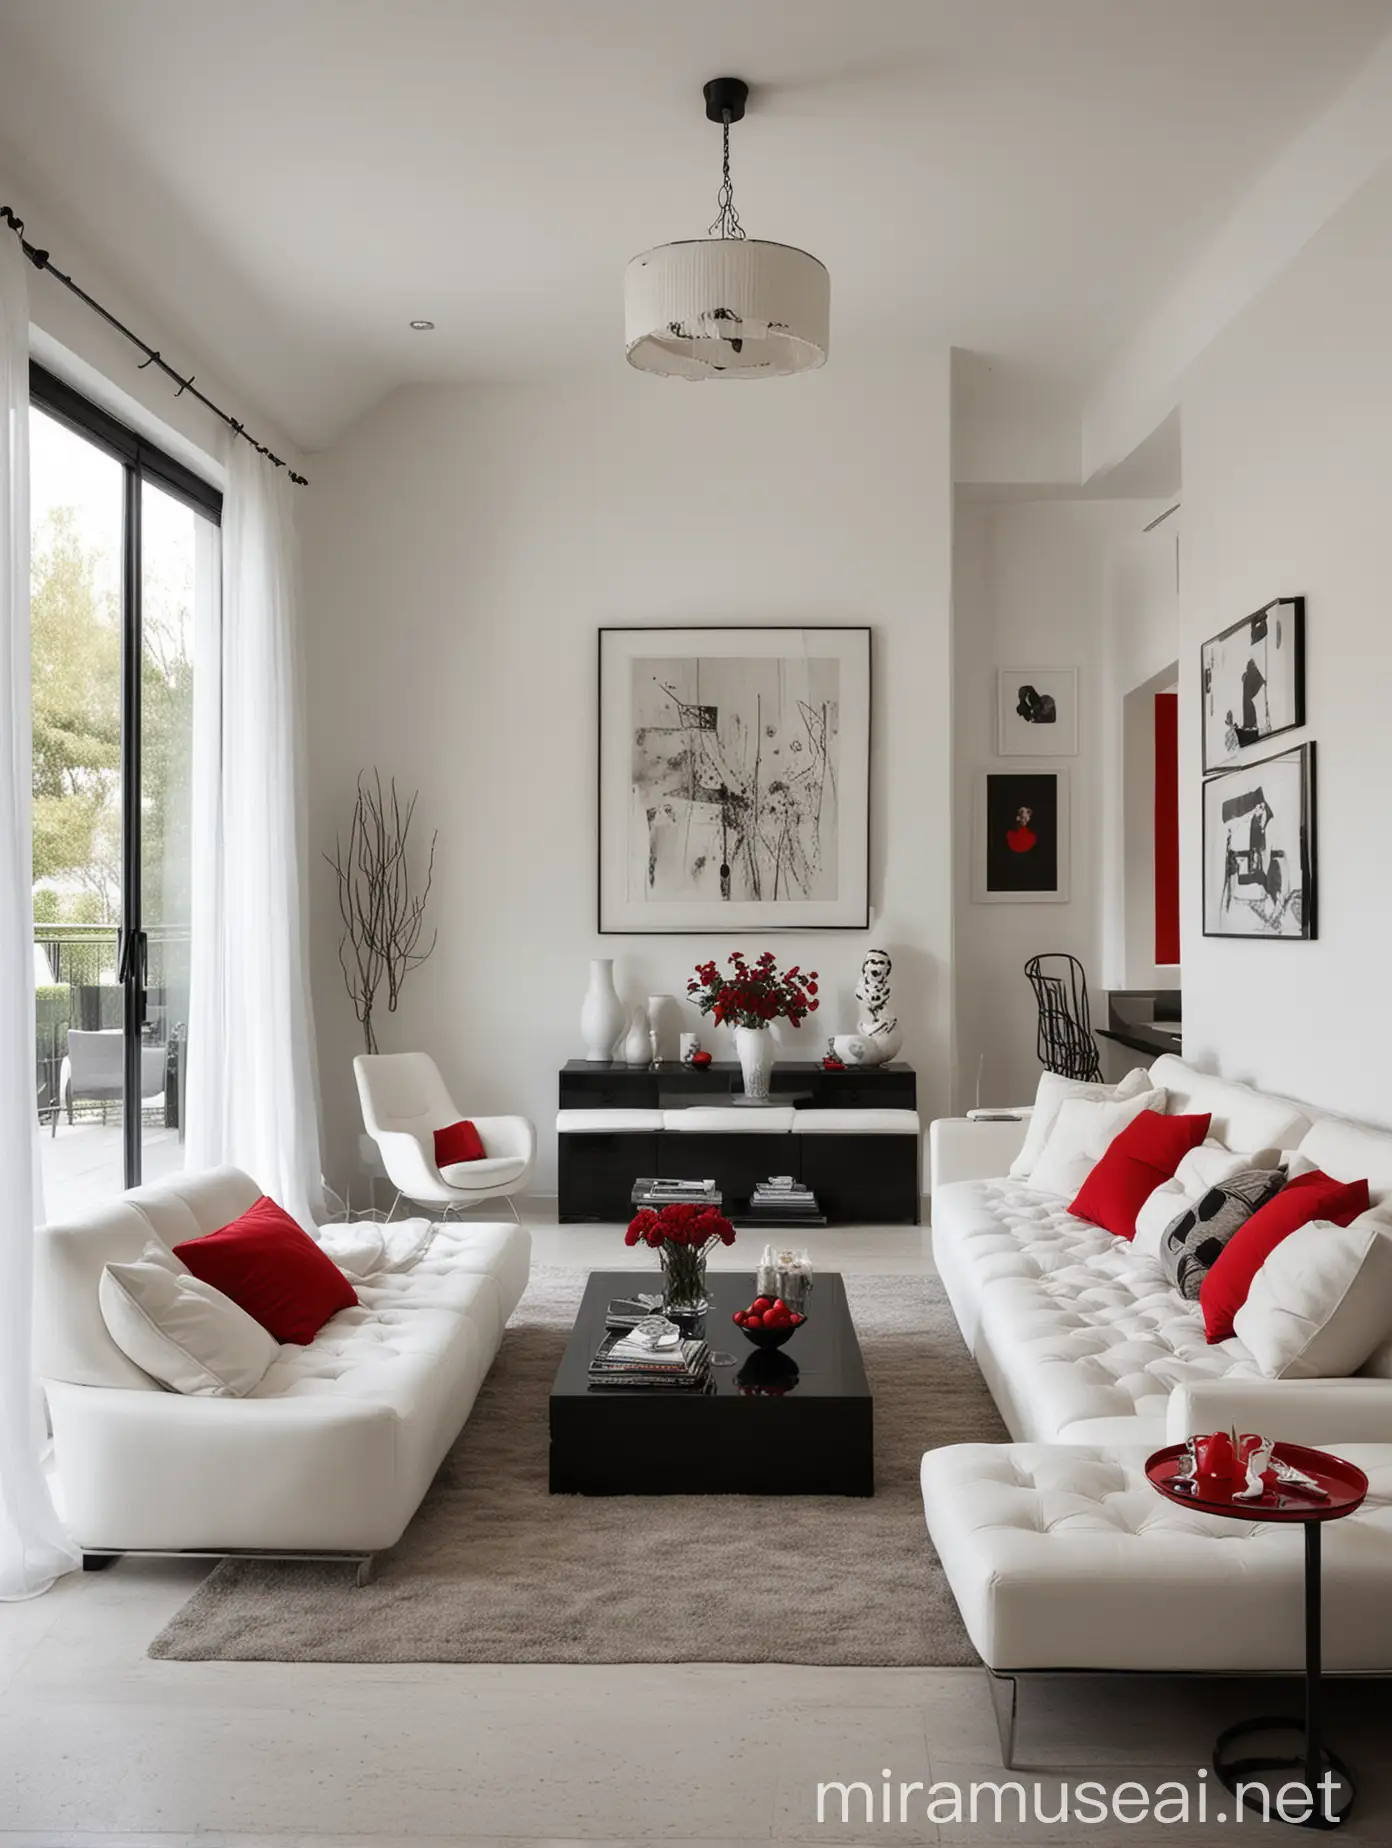 Una sala de una mansión lujosa, moderna paredes blancas muebles rojos y negros